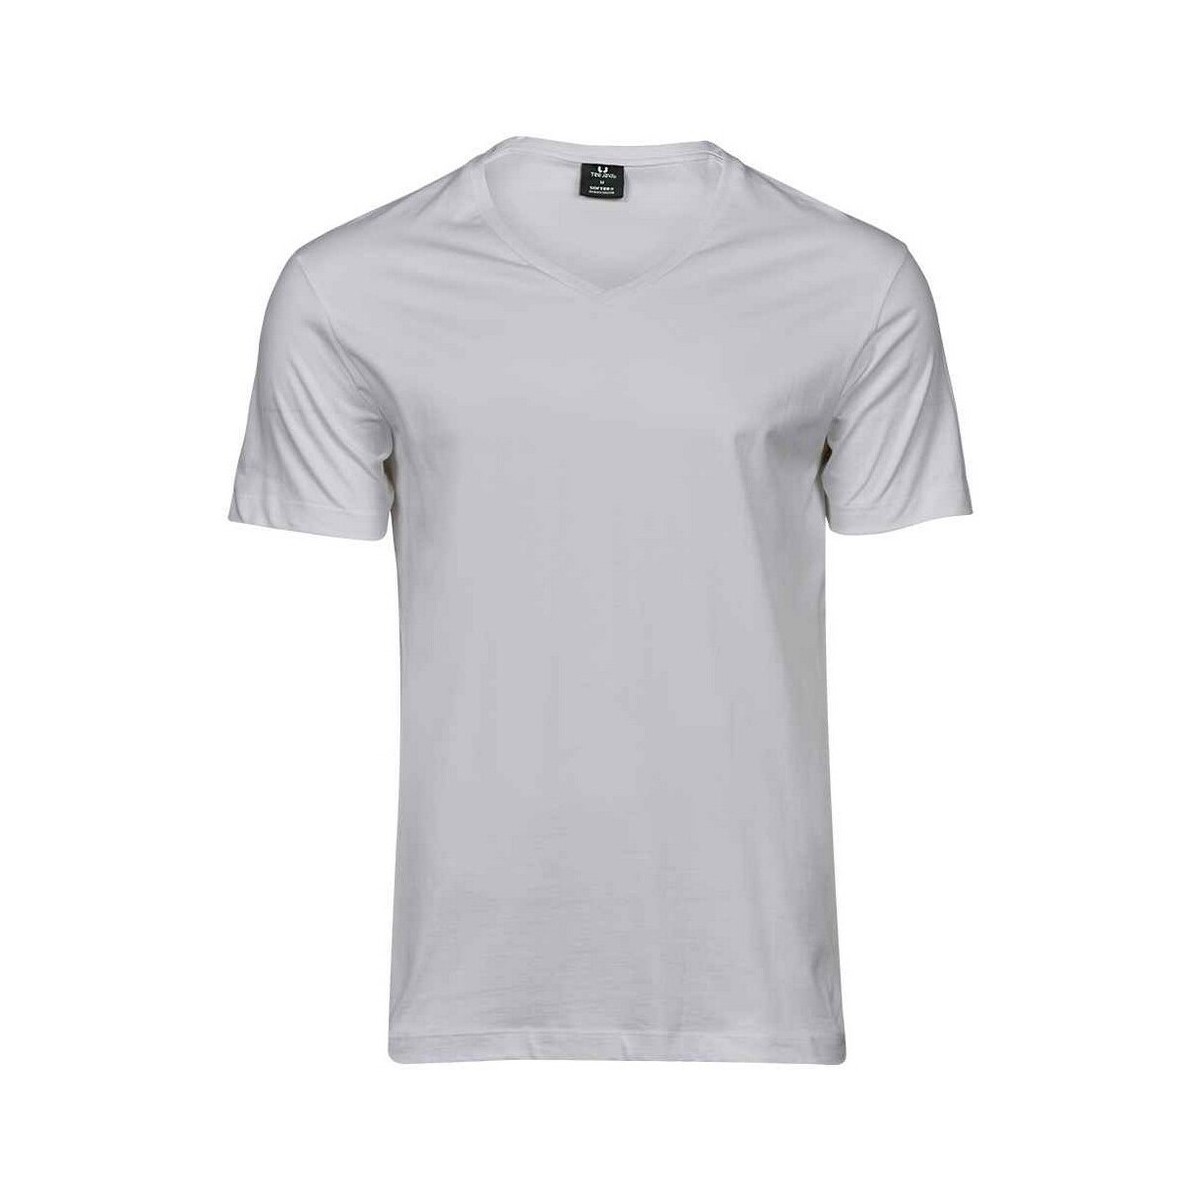 textil Hombre Camisetas manga larga Tee Jays Sof Blanco